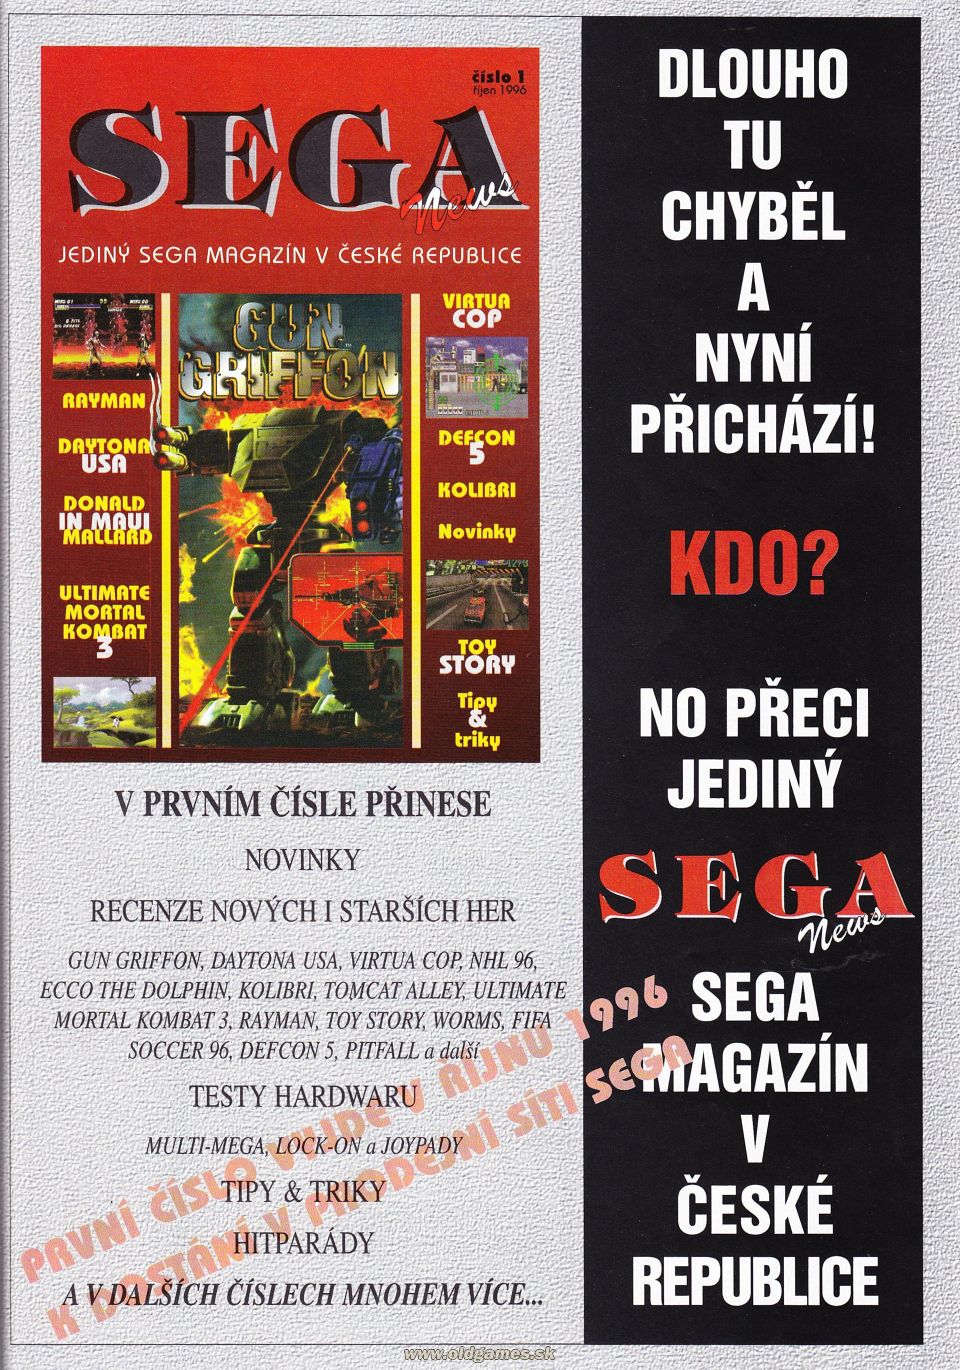 reklama - Sega News